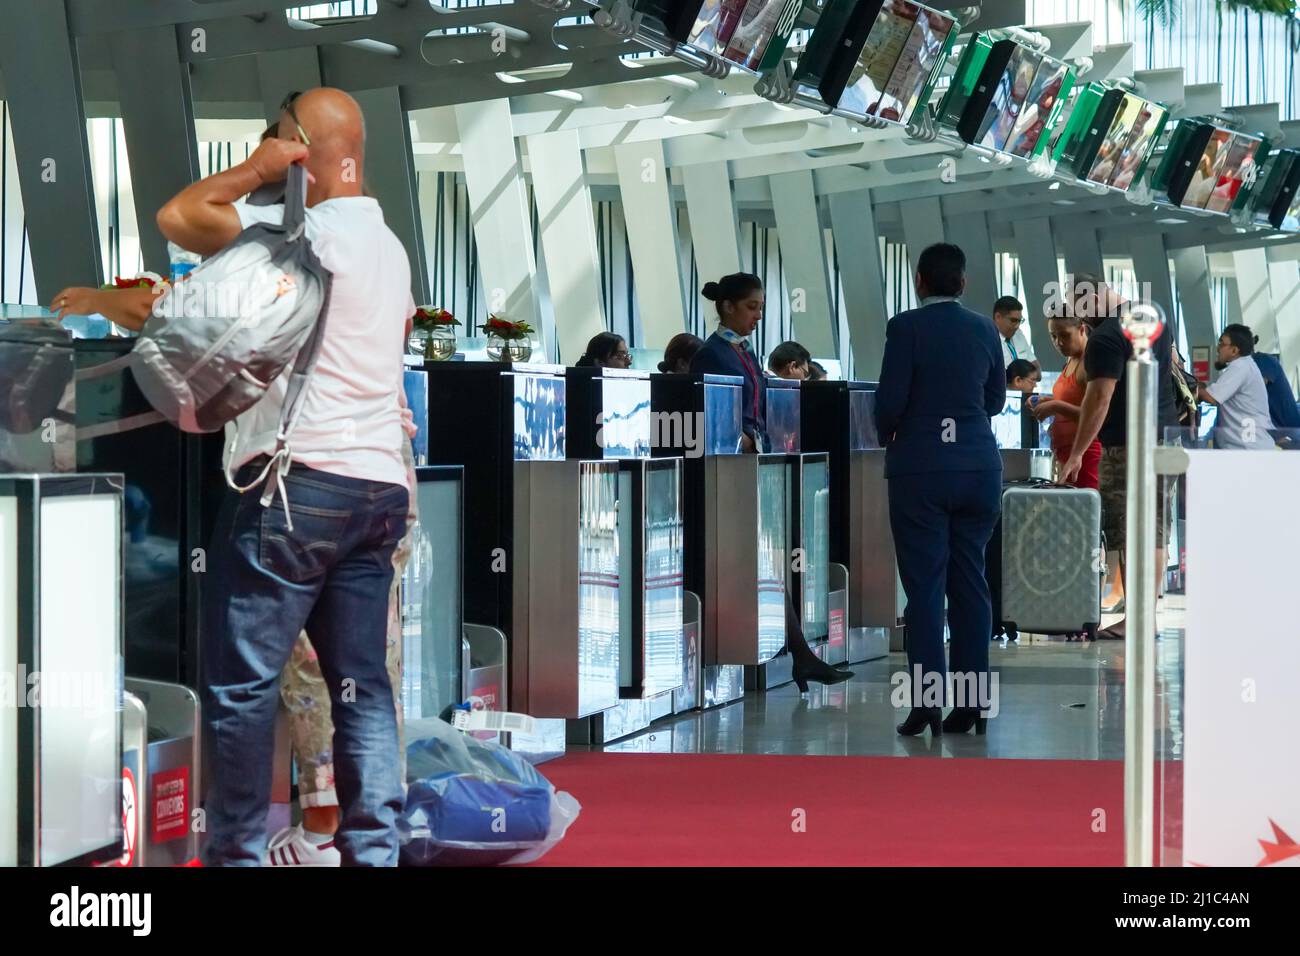 Passagiere oder Personen, die für einen Flug vom Flughafen Mauritius in der Nähe einchecken, stehen an den Check-in-Schaltern oder an den Schaltern für Flugreisen Stockfoto